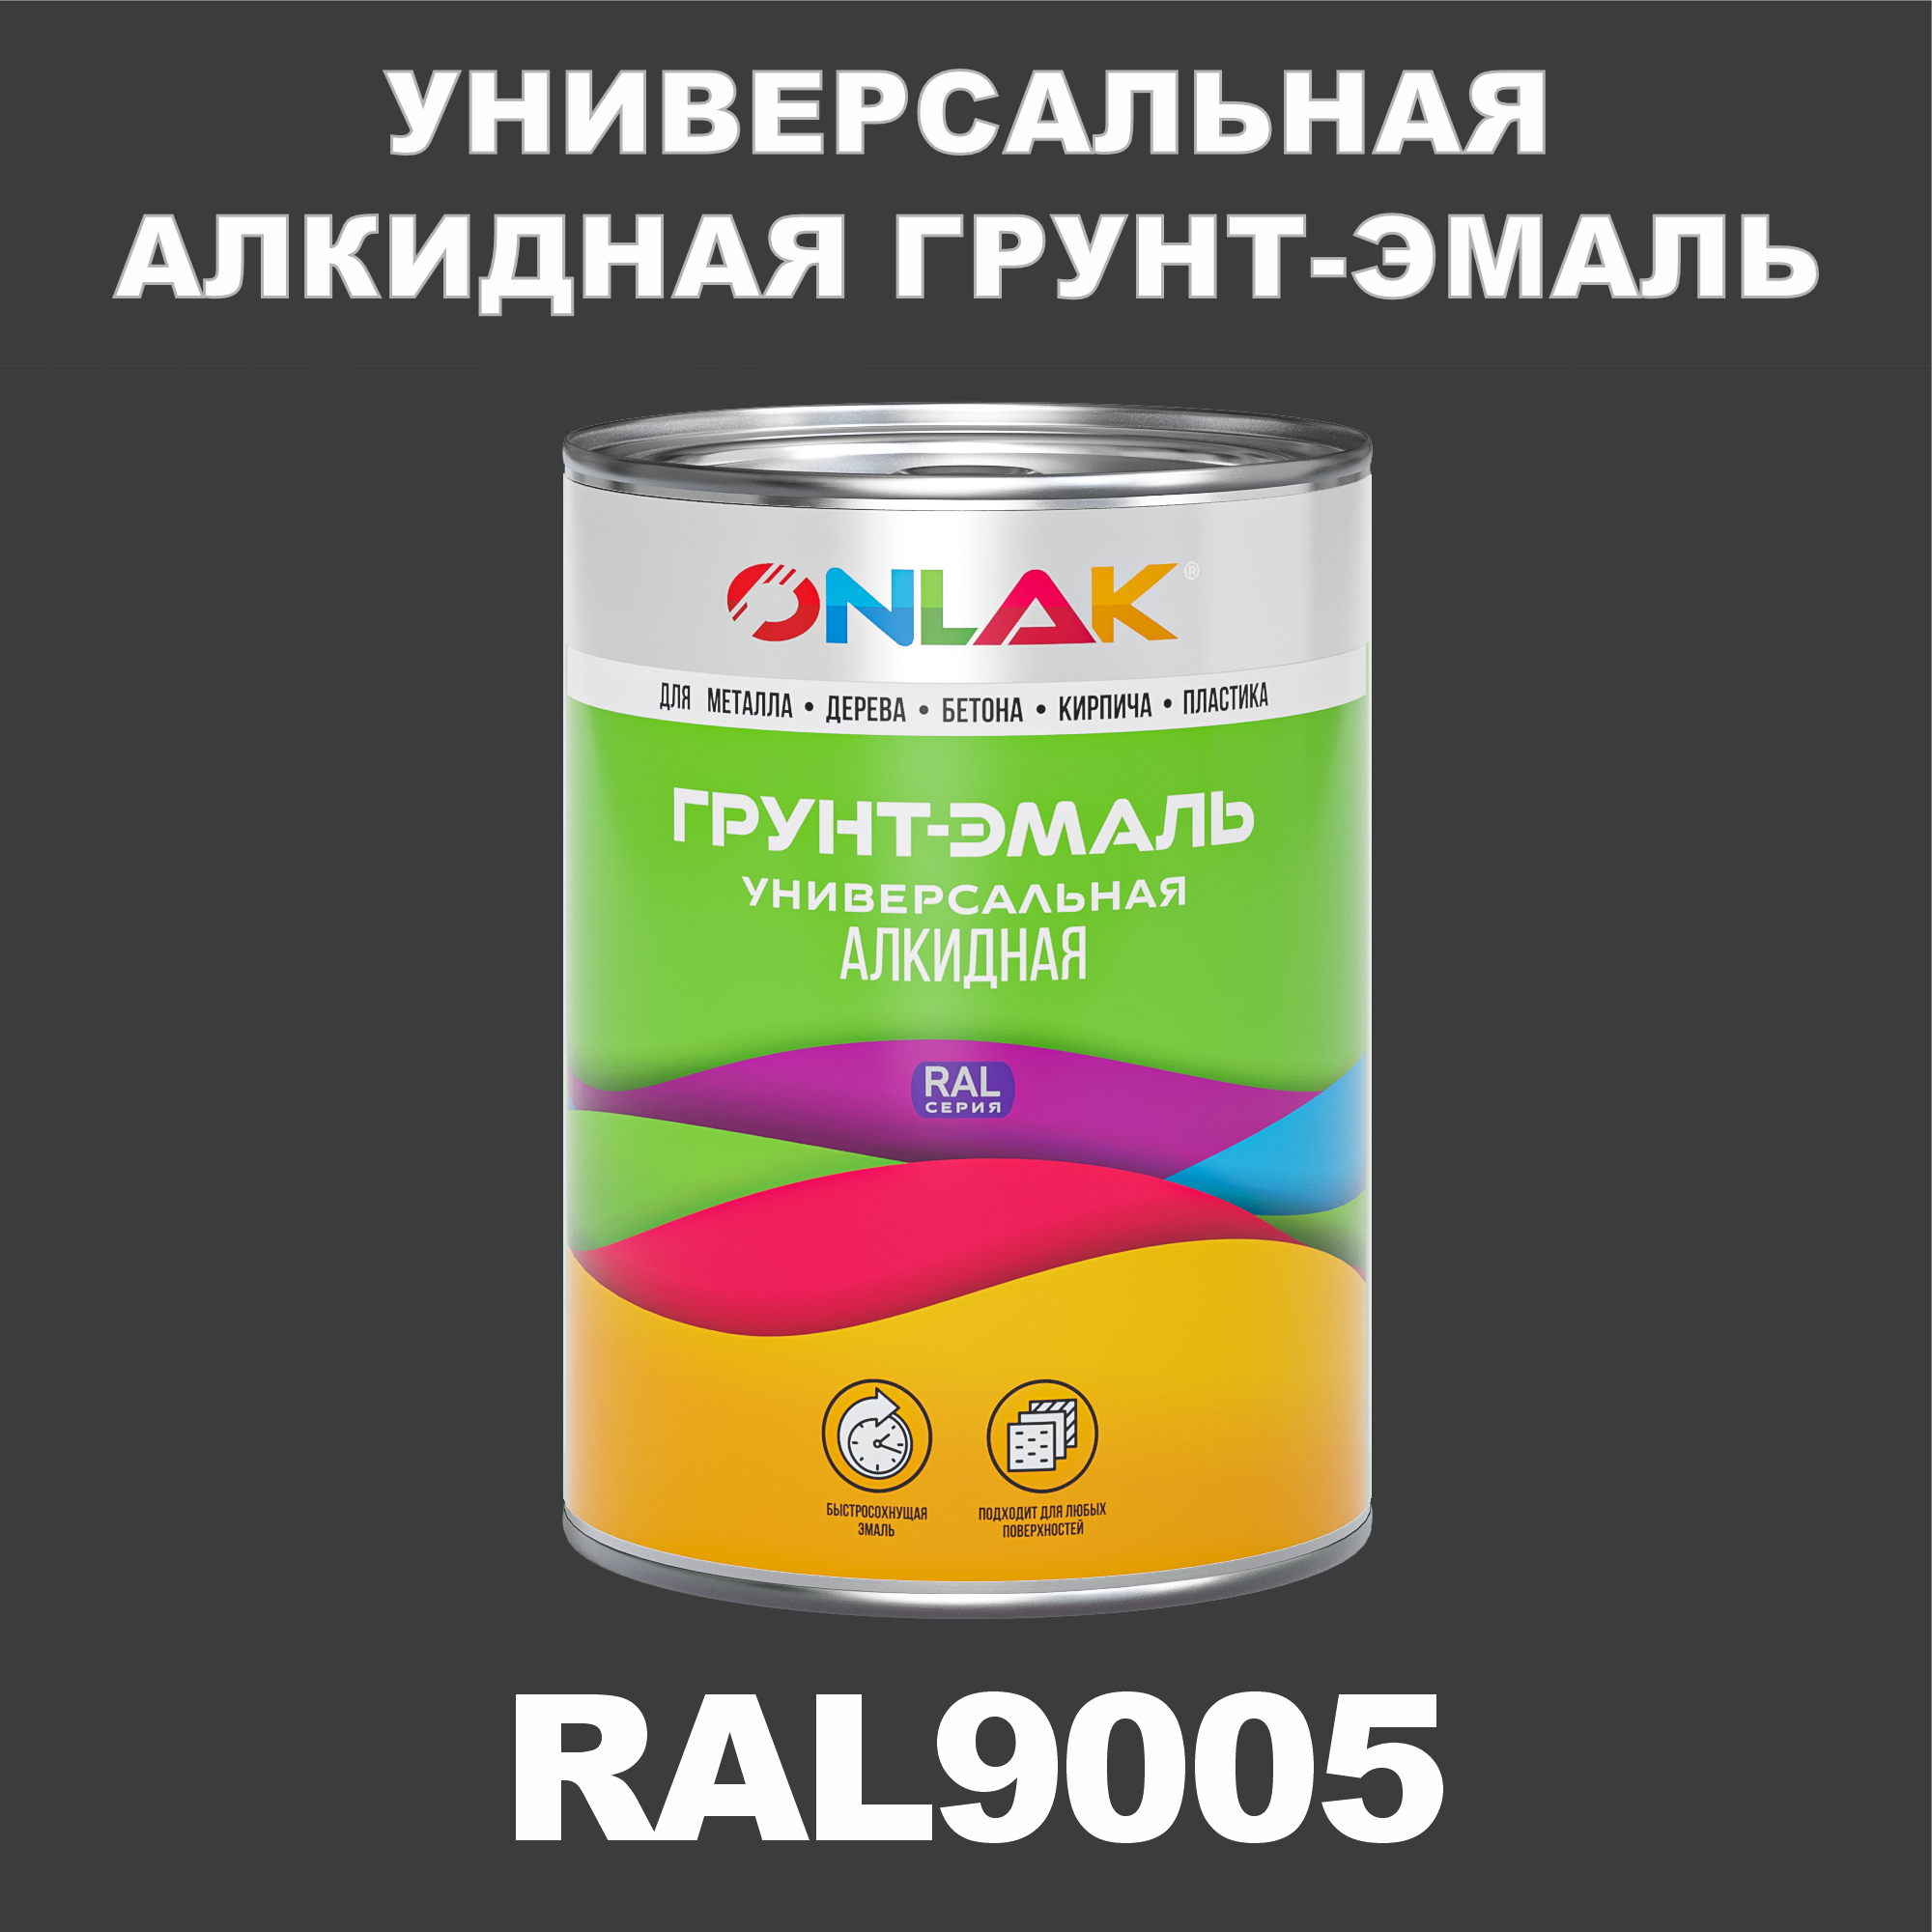 Грунт-эмаль ONLAK 1К RAL9005 антикоррозионная алкидная по металлу по ржавчине 1 кг грунт эмаль май по ржавчине алкидная серая 1 9 кг